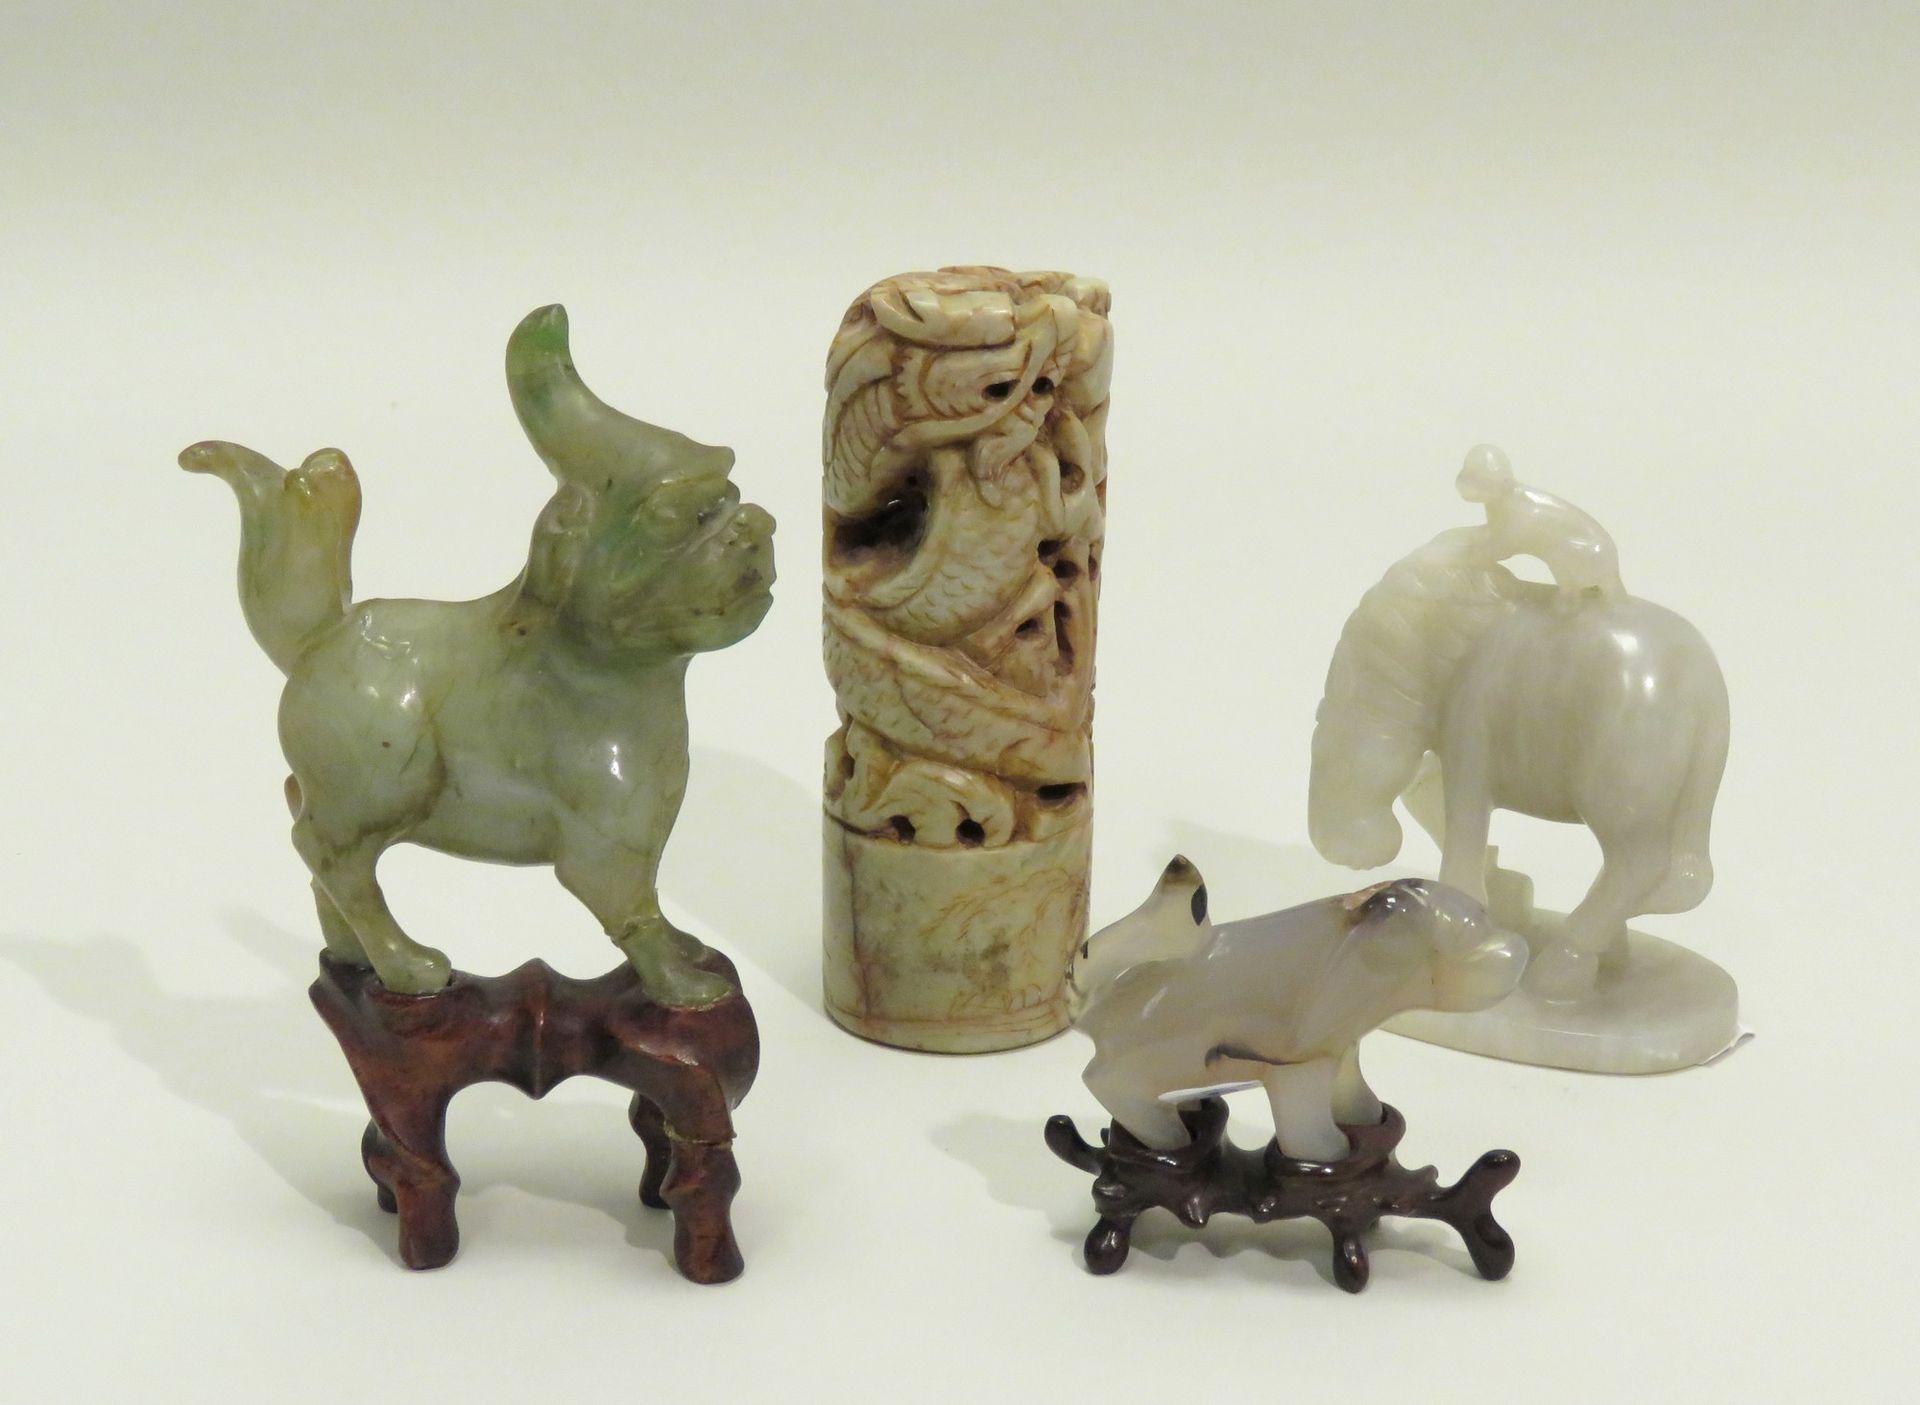 Null 本场拍卖会共有四件物品，包括:

......灰白玉的猴子骑马（成功的象征）；玛瑙的小狗，及其底座；绿色硬石的奇美拉，有褐色脉络，及其底座；皂石雕刻的&hellip;